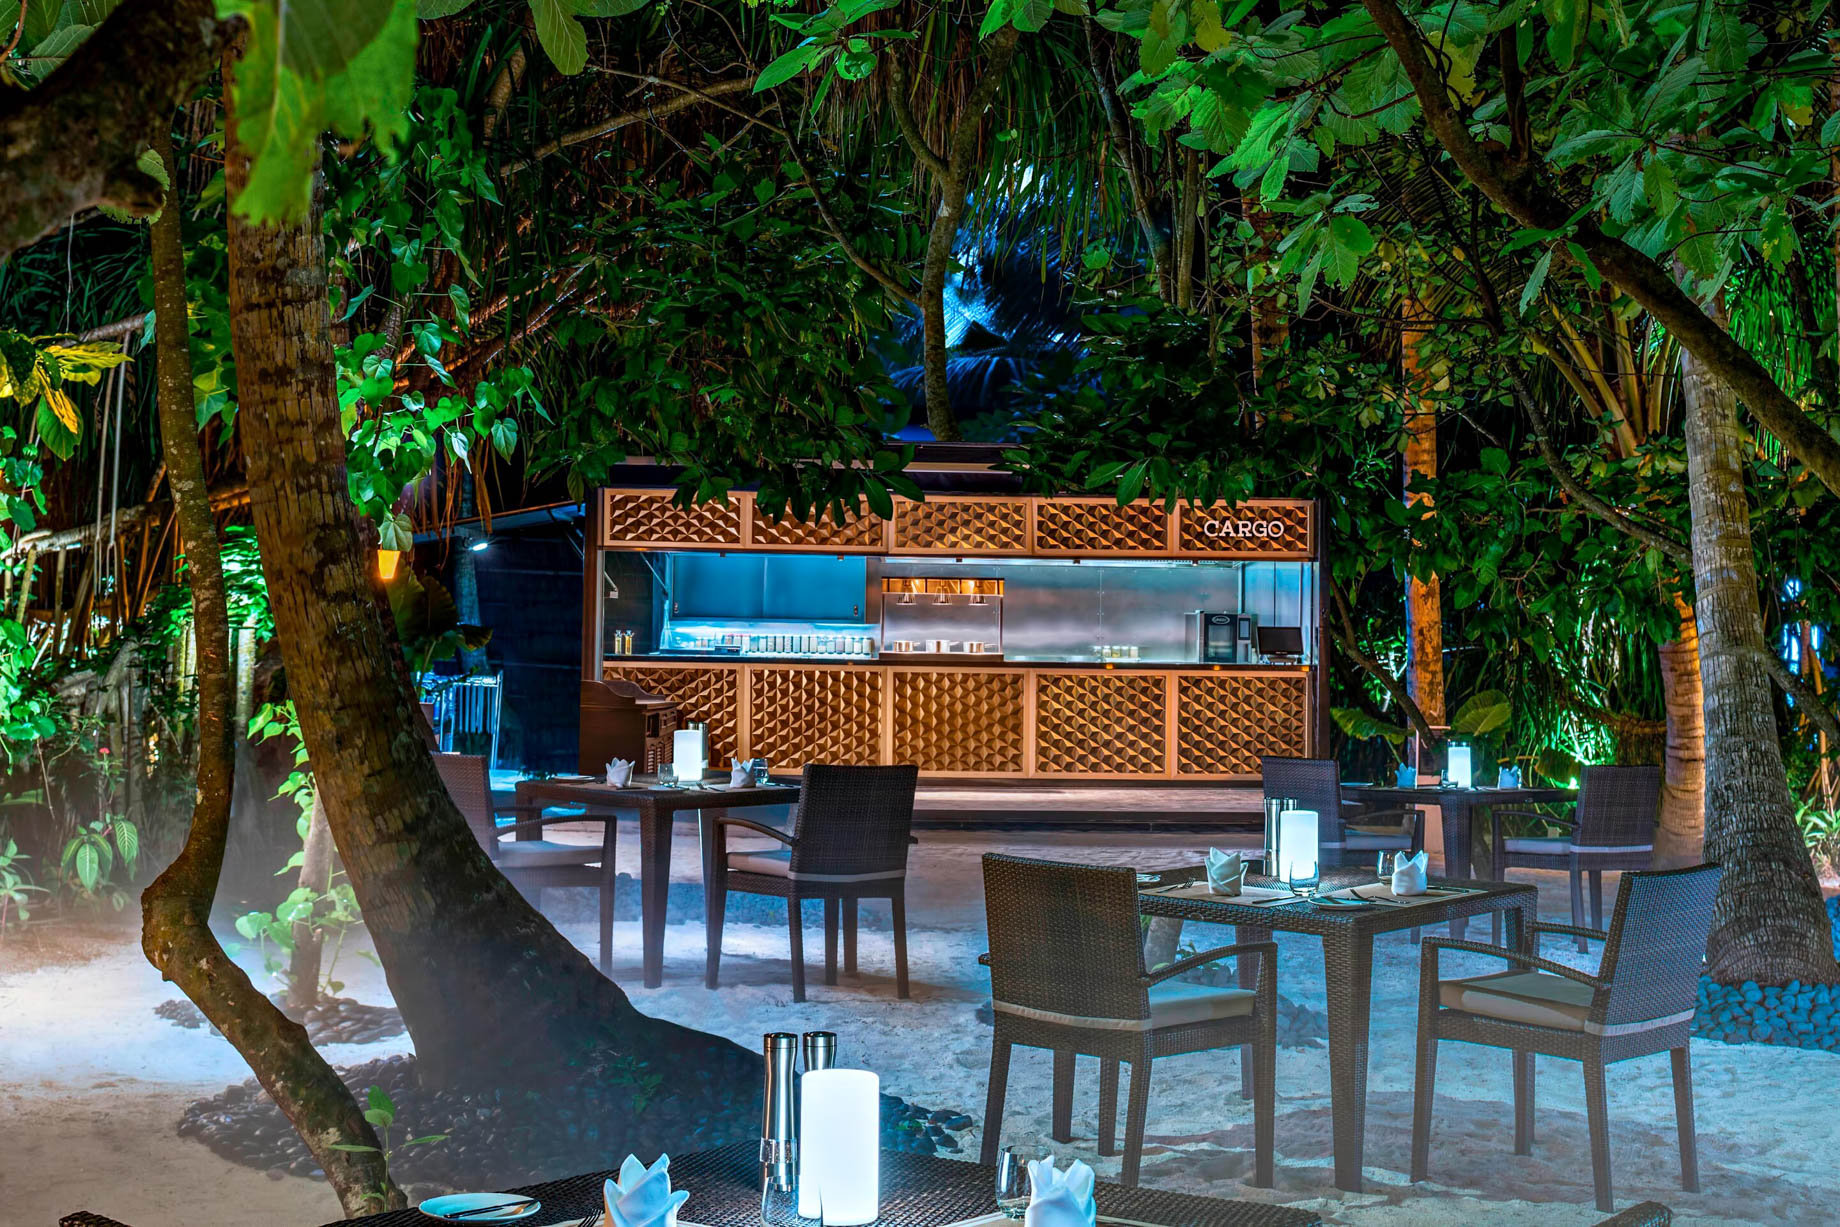 The St. Regis Maldives Vommuli Resort – Dhaalu Atoll, Maldives – Cargo Restaurant Middle Eastern